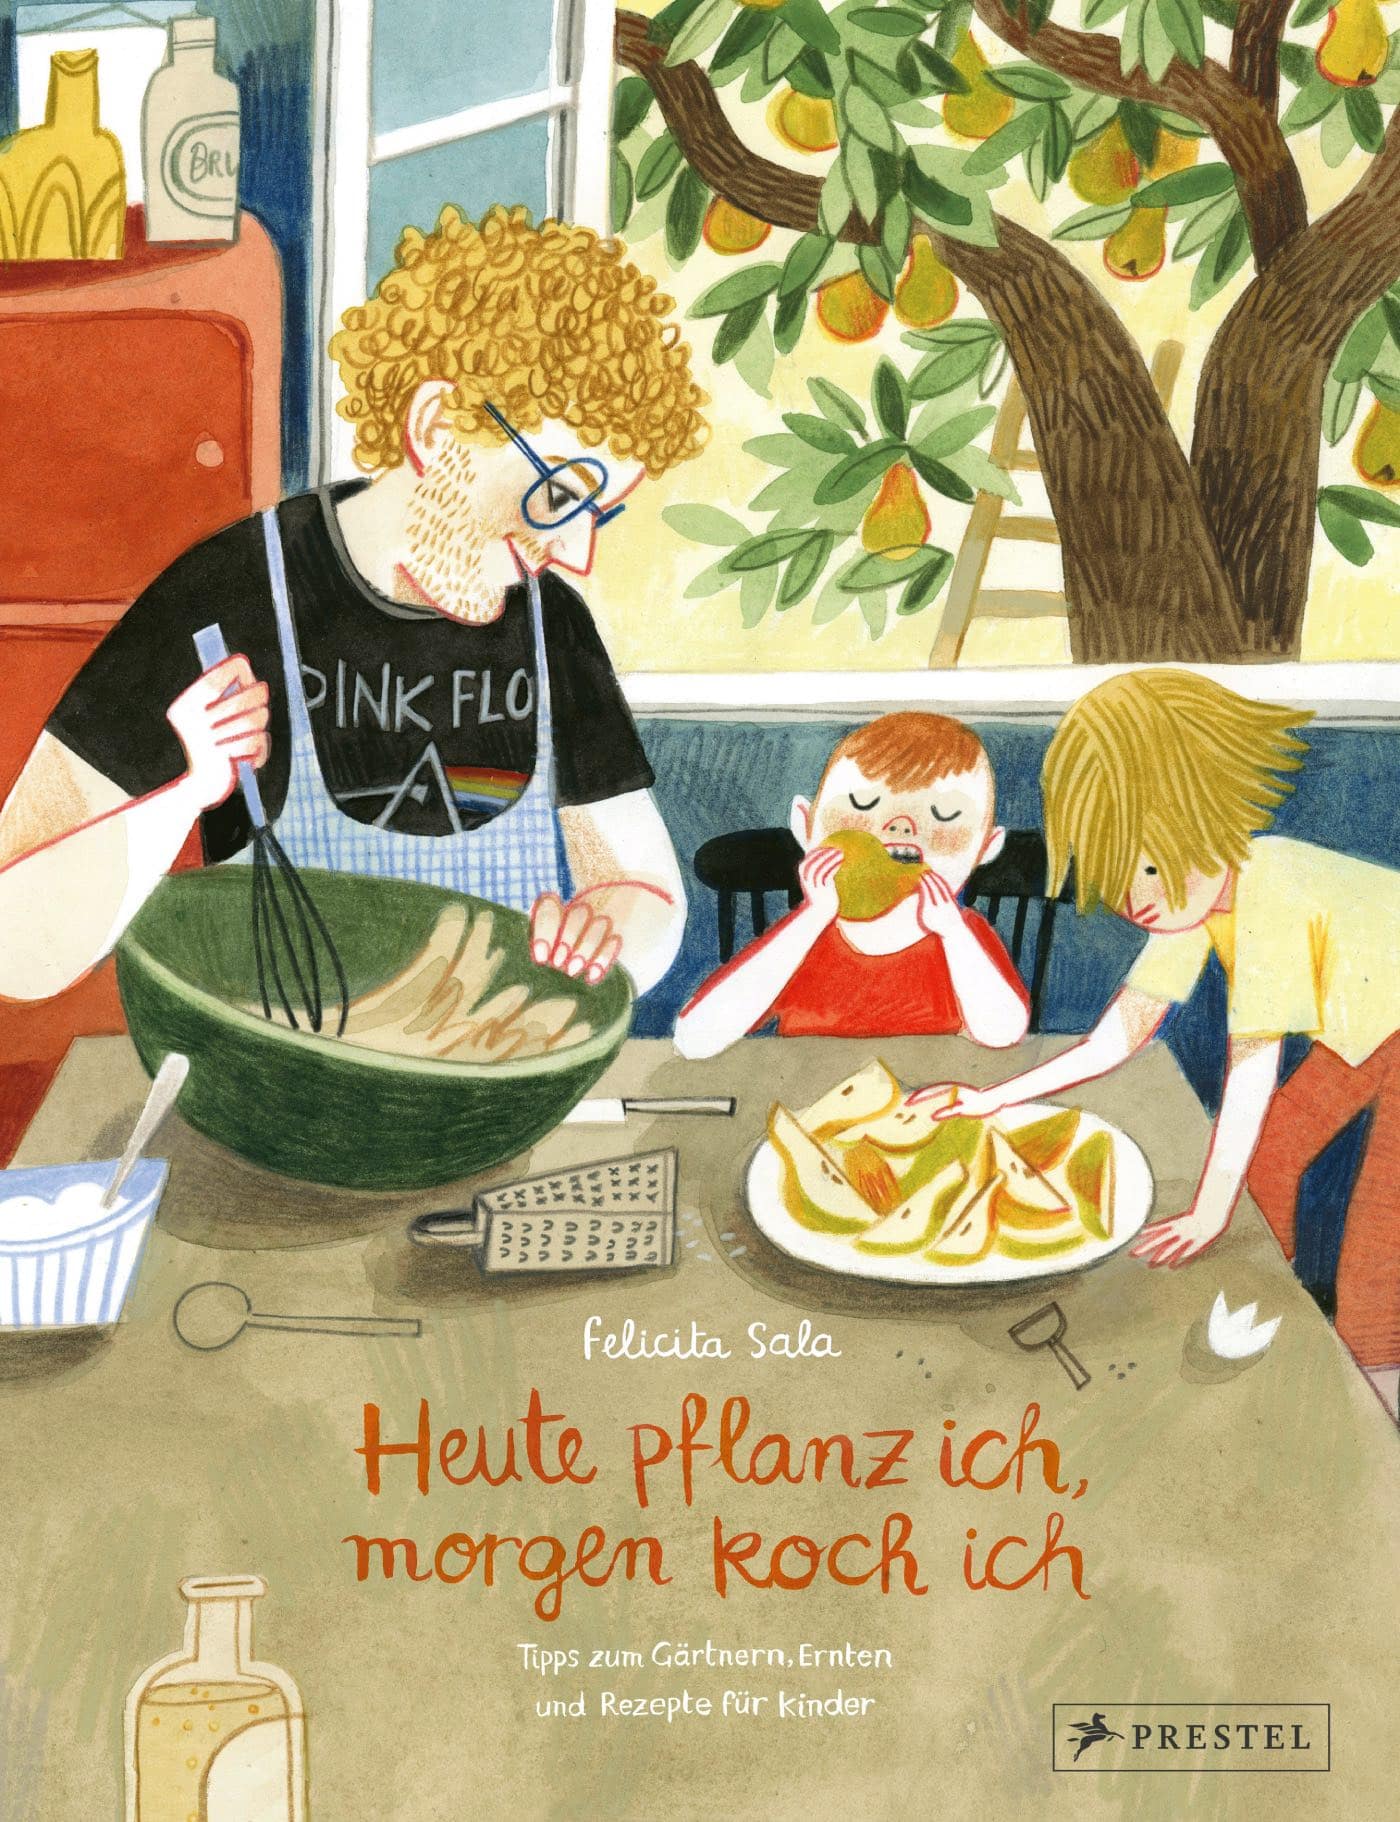 Kinderbuch-Tipp rund ums Gärtnern und Natur erleben mit Kindern: Huet pflanz ich, morgen koch ich ... // HIMBEER